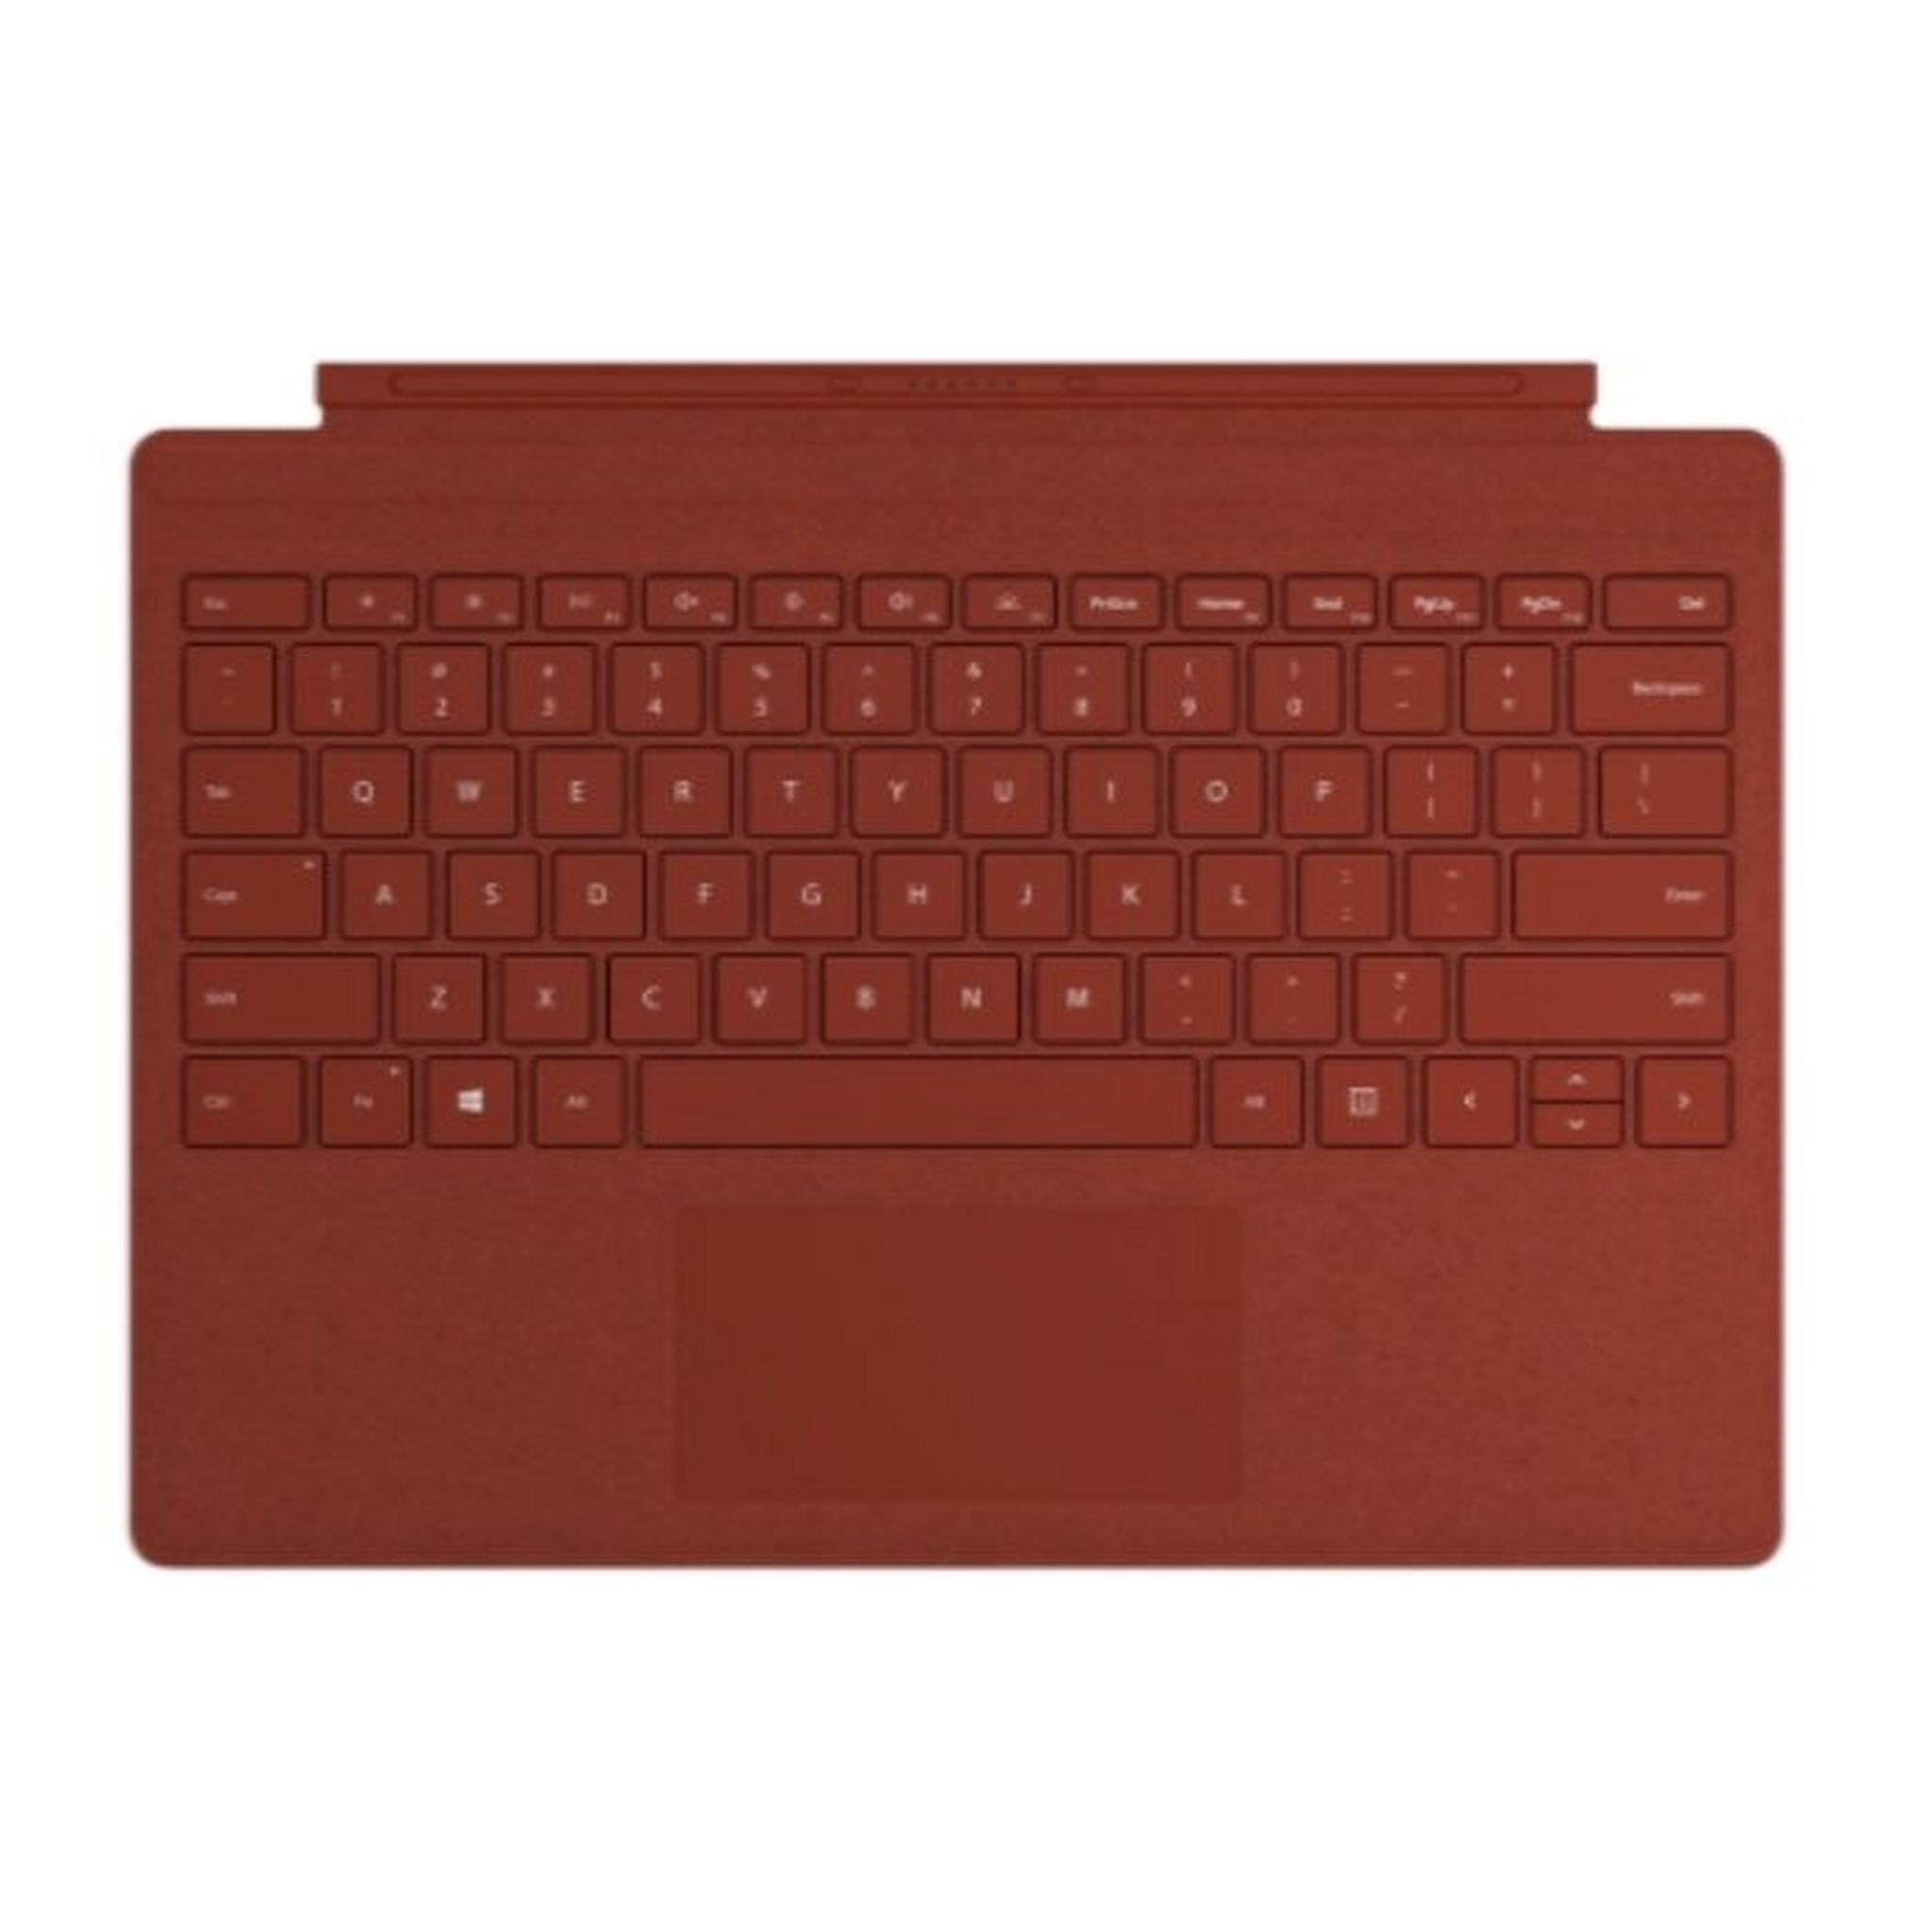 غطاء لوحة المفاتيح لجهاز ميكروسوفت سيرفس برو - أحمر